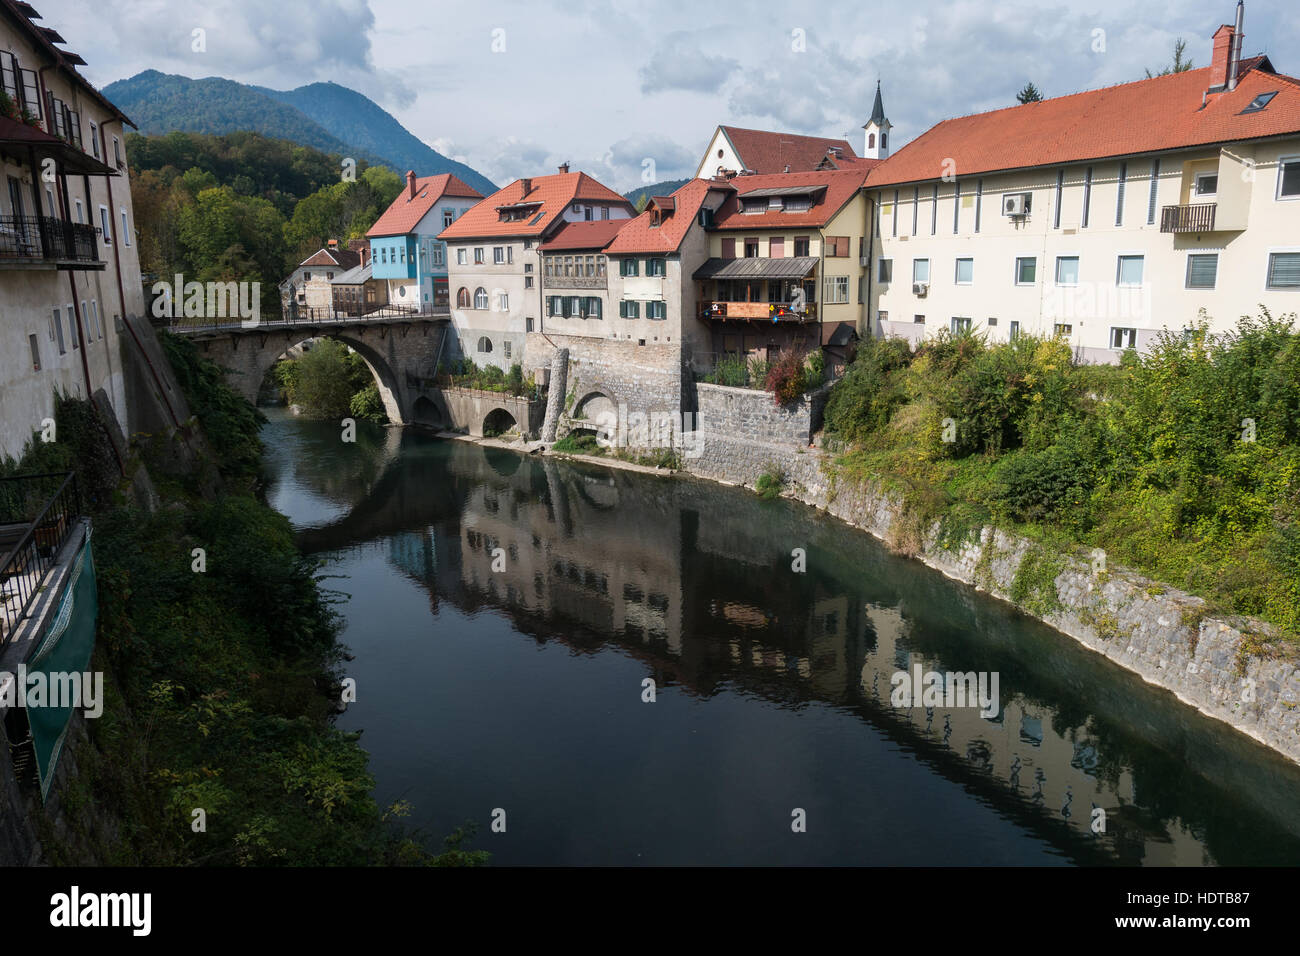 Río que fluye a través de la vieja ciudad de Škofja Loka (Eslovenia). Puente sobre el río y el reflejo de los edificios en el agua. Foto de stock